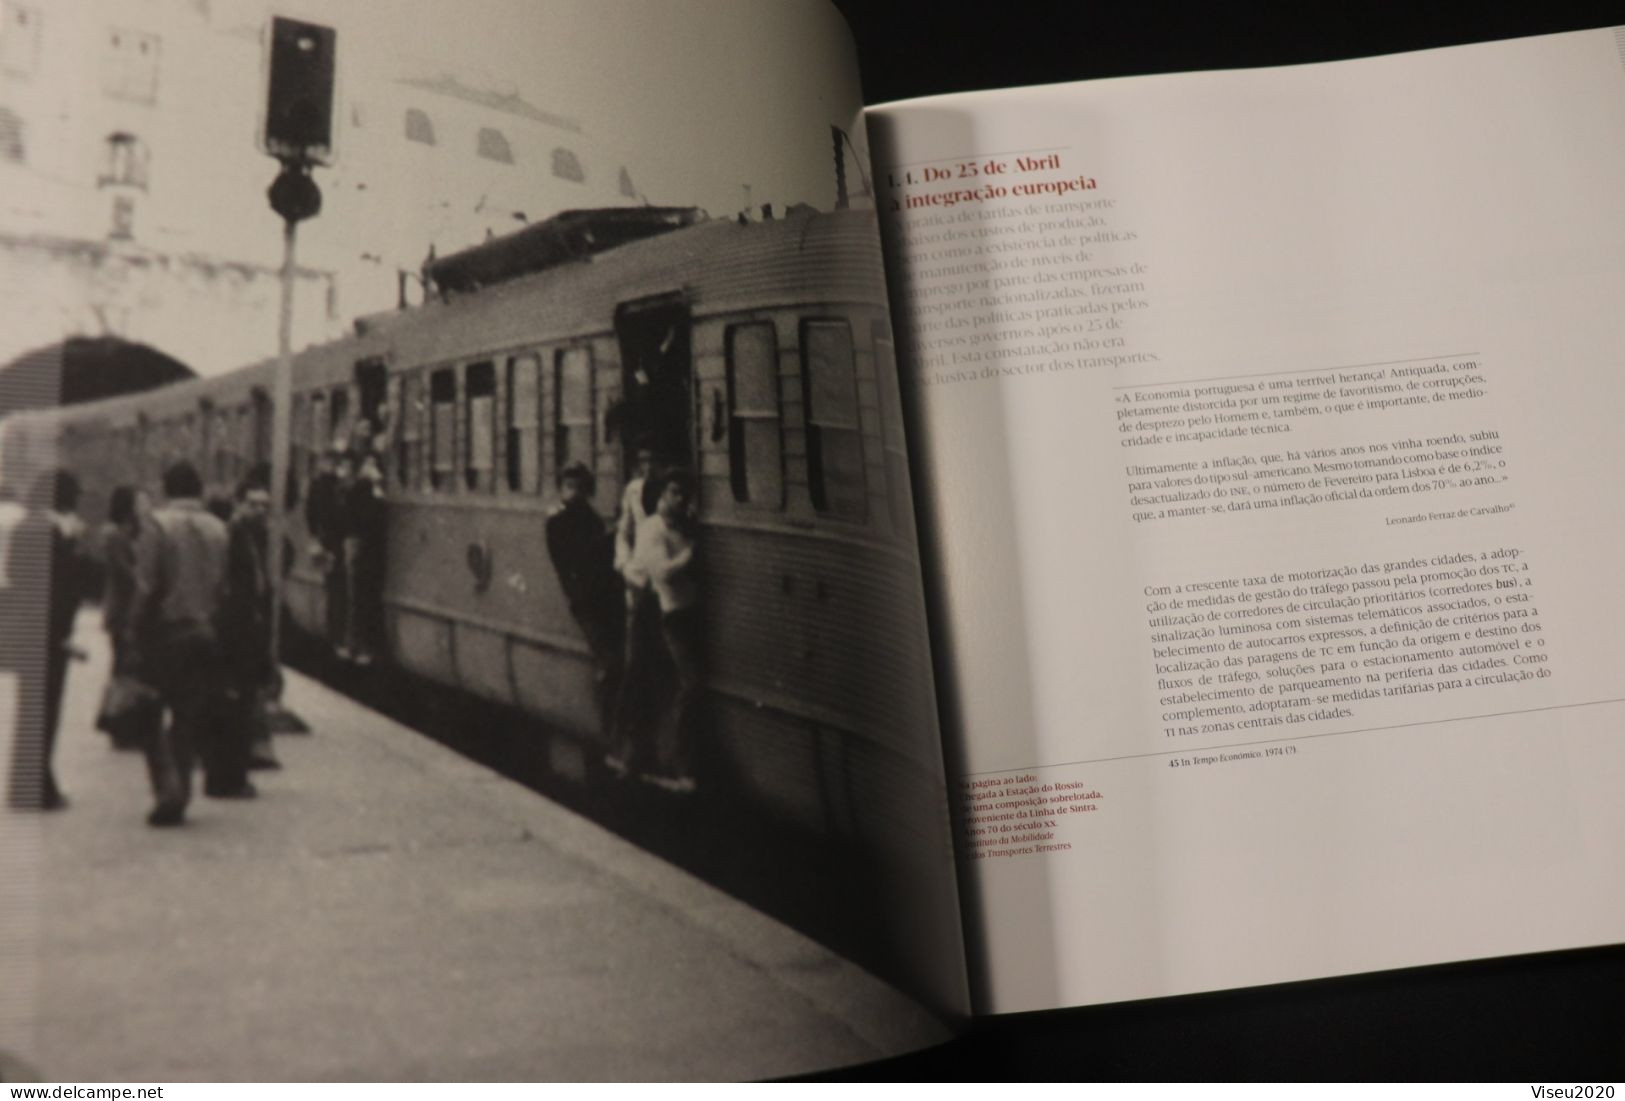 Portugal 2011 - Transportes Públicos Urbanos Em Portugal - Book Of The Year